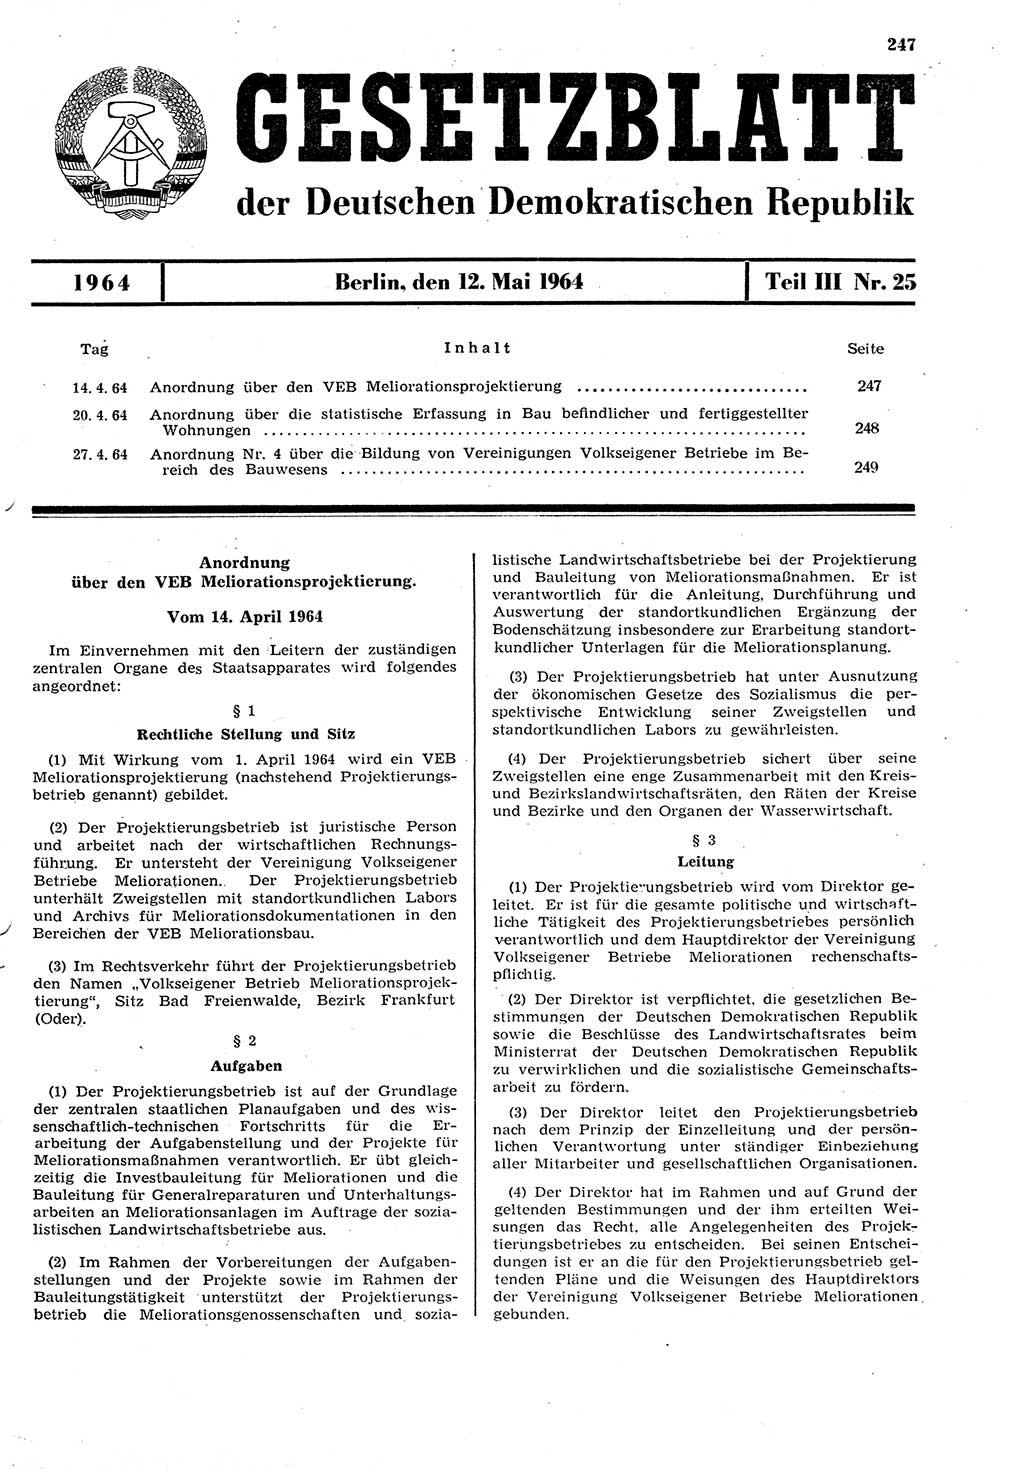 Gesetzblatt (GBl.) der Deutschen Demokratischen Republik (DDR) Teil ⅠⅠⅠ 1964, Seite 247 (GBl. DDR ⅠⅠⅠ 1964, S. 247)